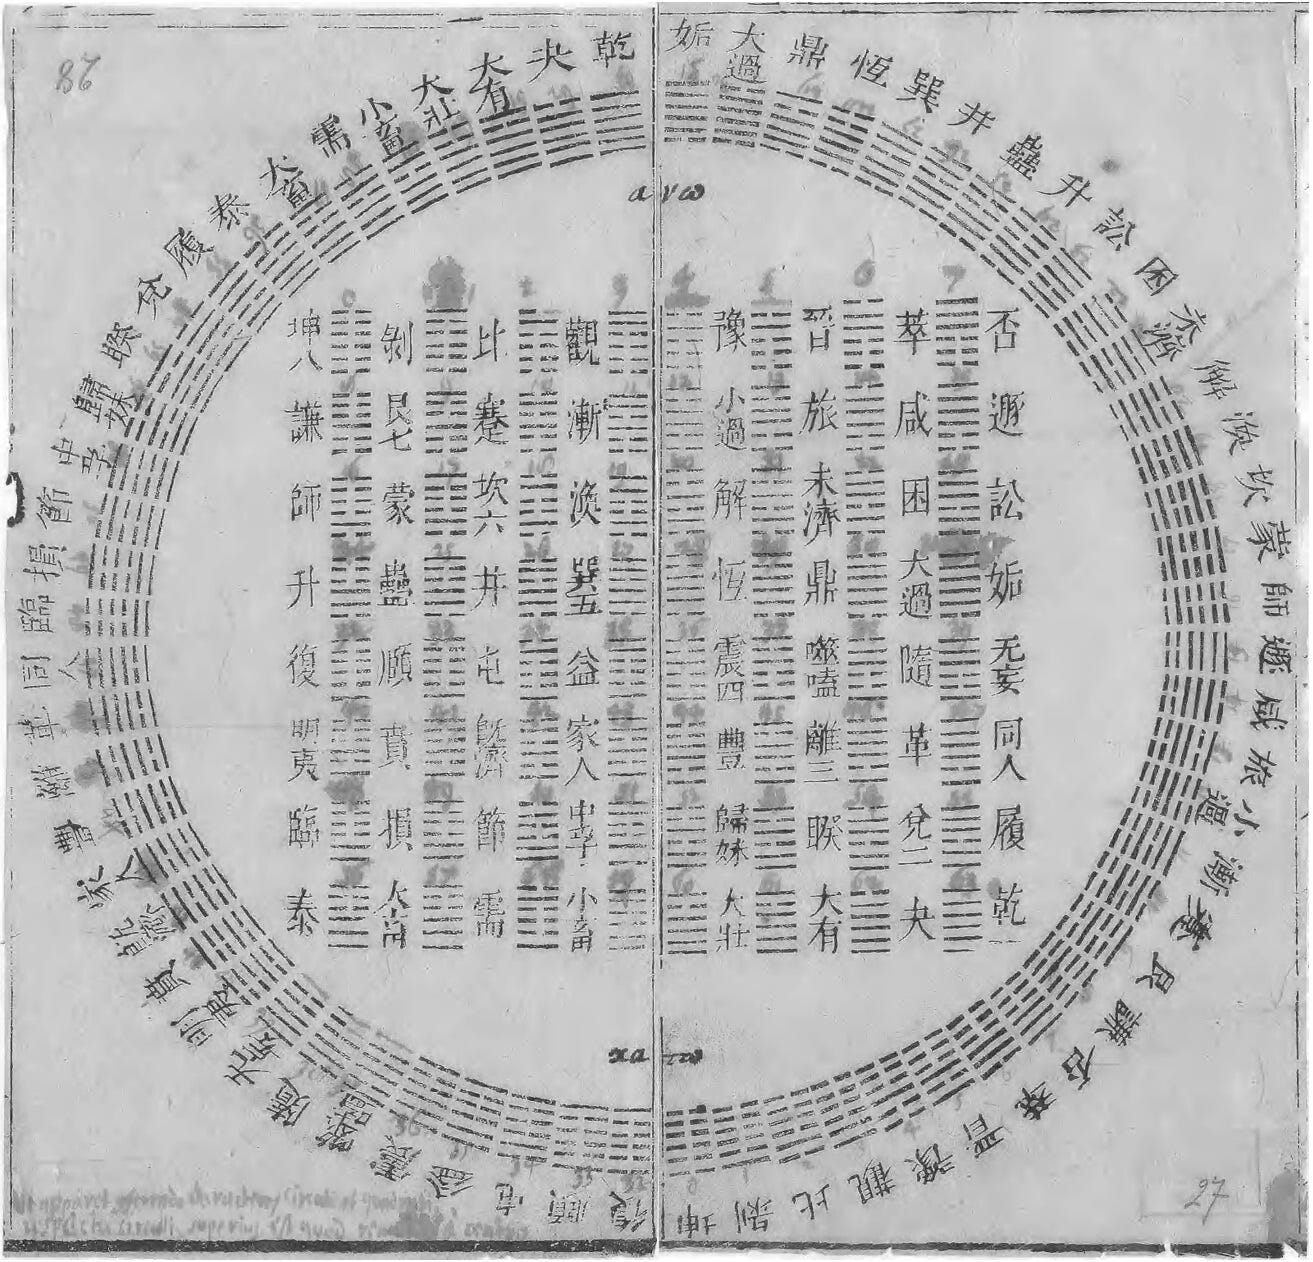 Hexagram (I Ching) - Wikipedia